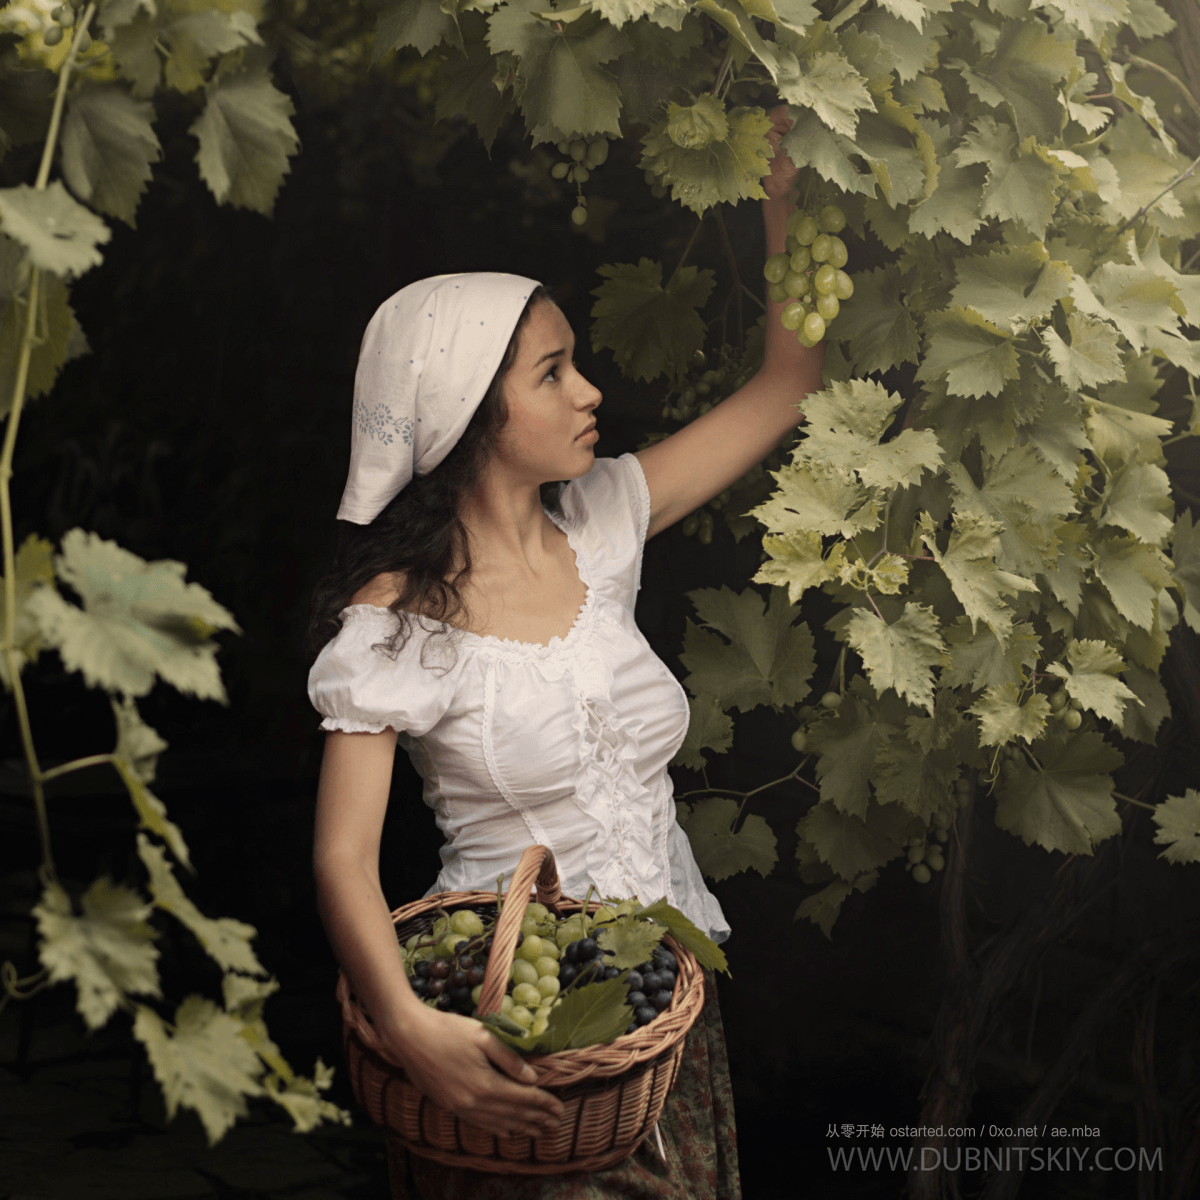 摄影师 David Dubnitskiy 作品：乌克兰美女们无拘无束愉快田园生活 - 第2张图片